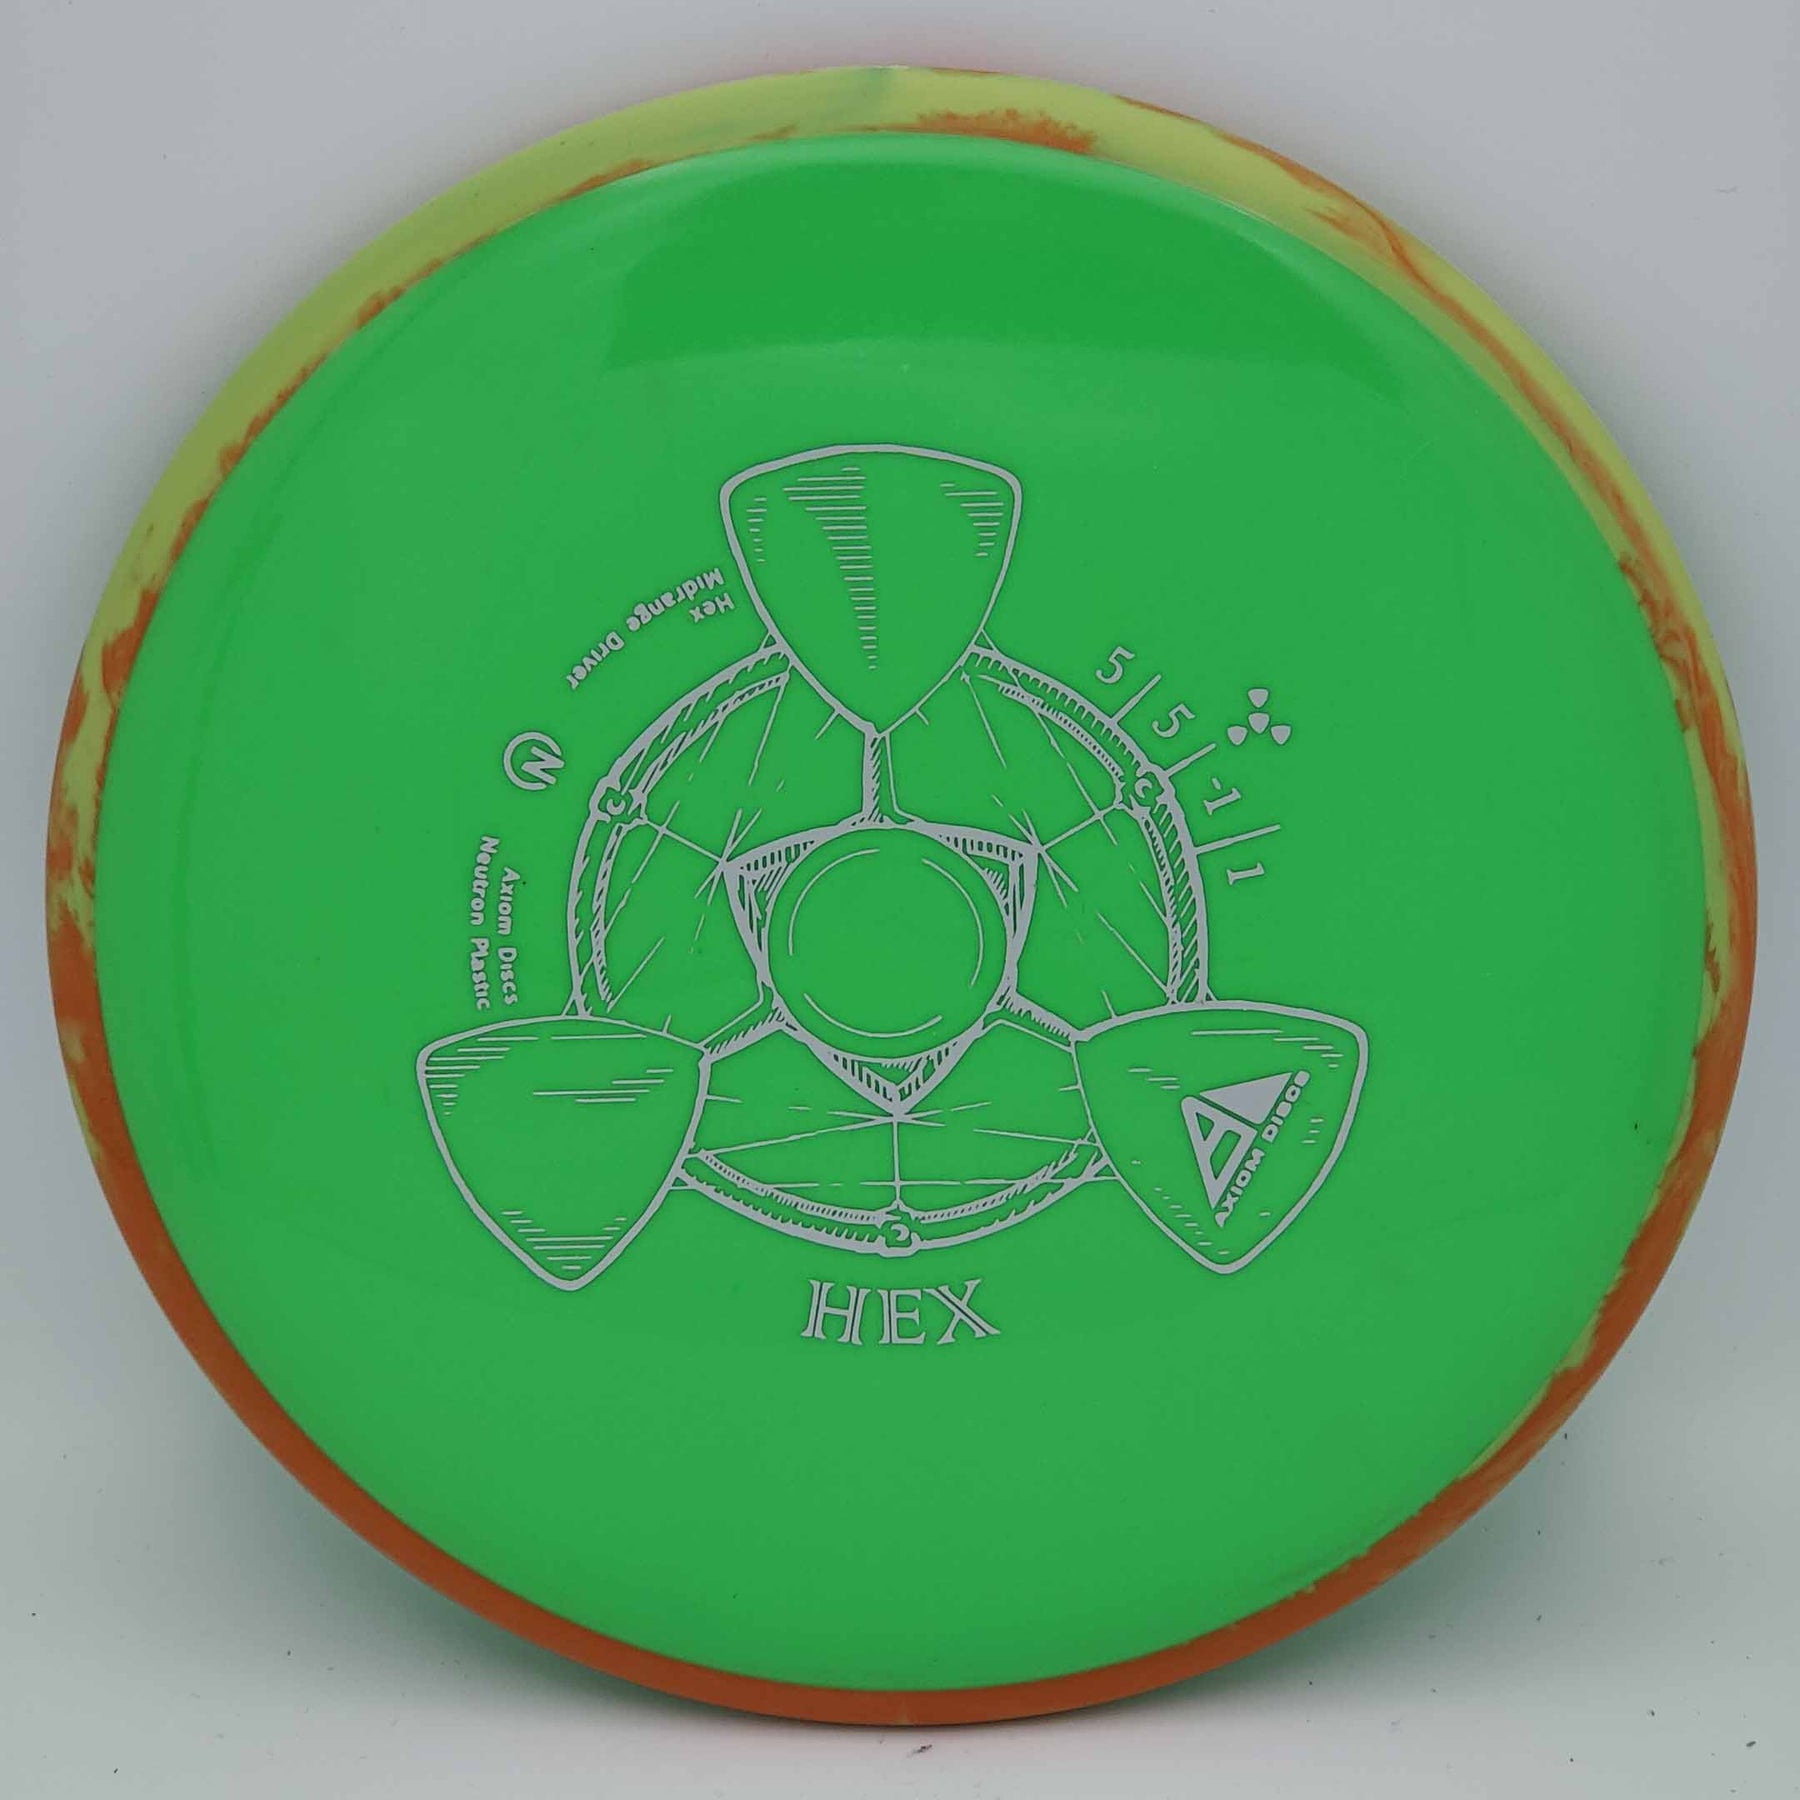 Axiom Hex - Neutron 170-175g